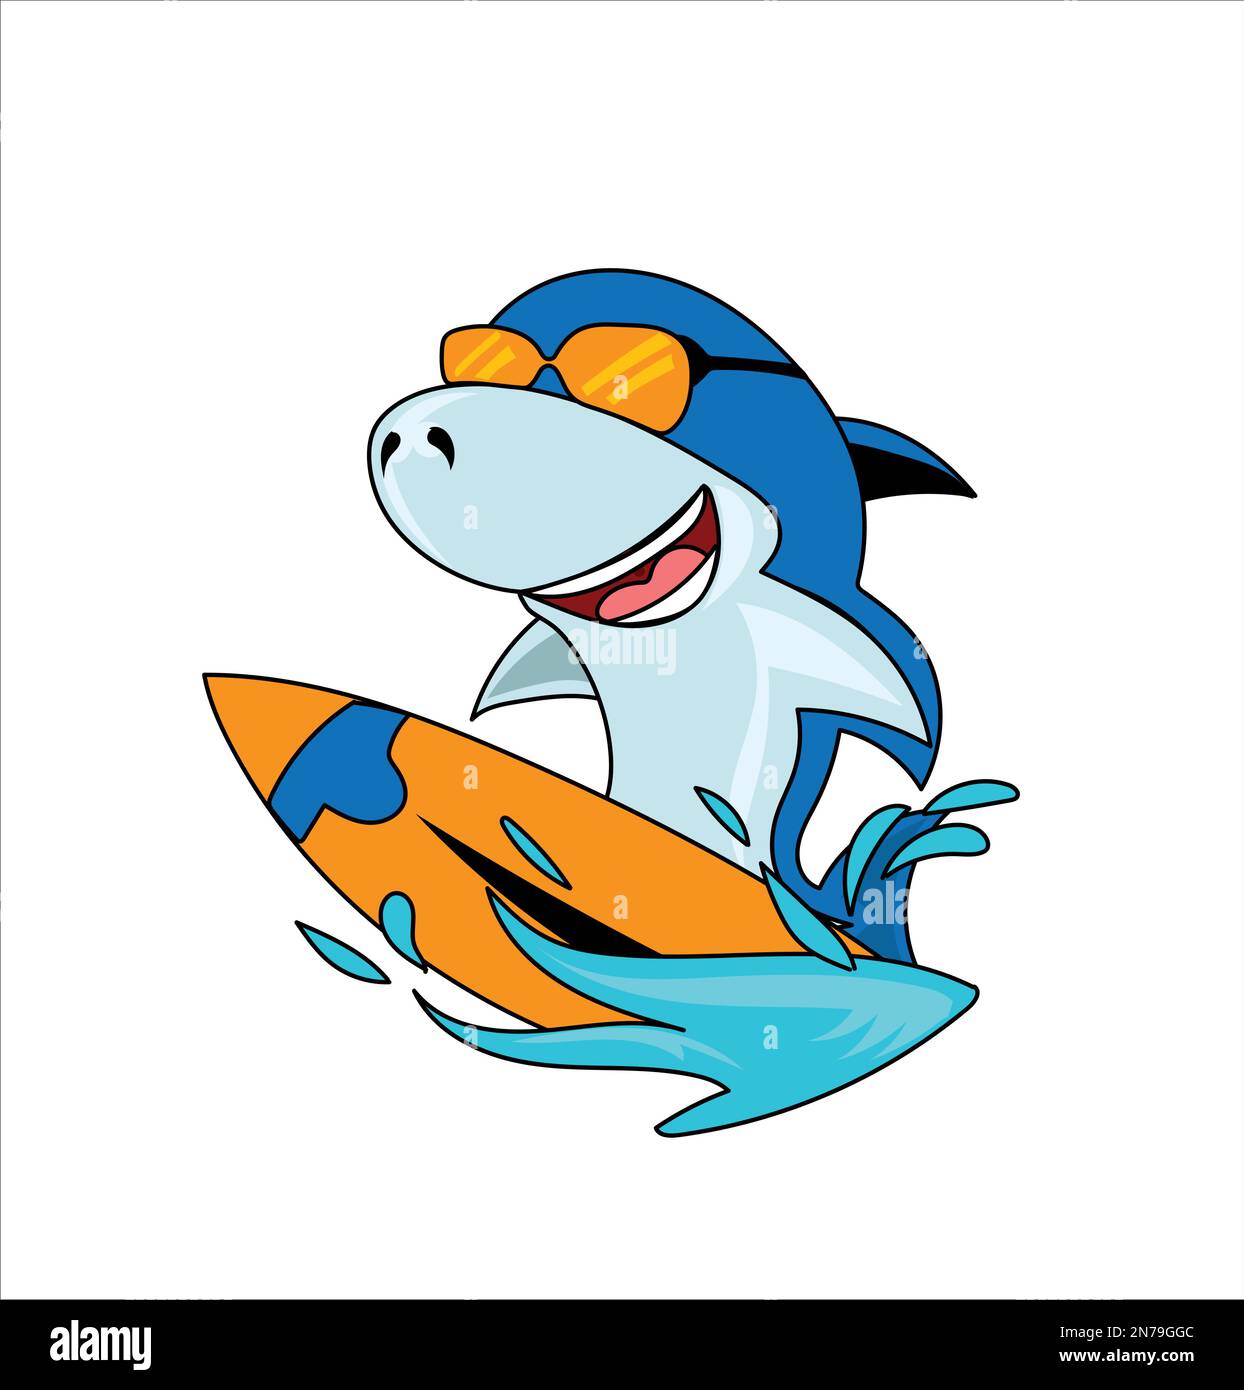 Fish on Skateboard Vector Illustration Cartoon Stock Vektor